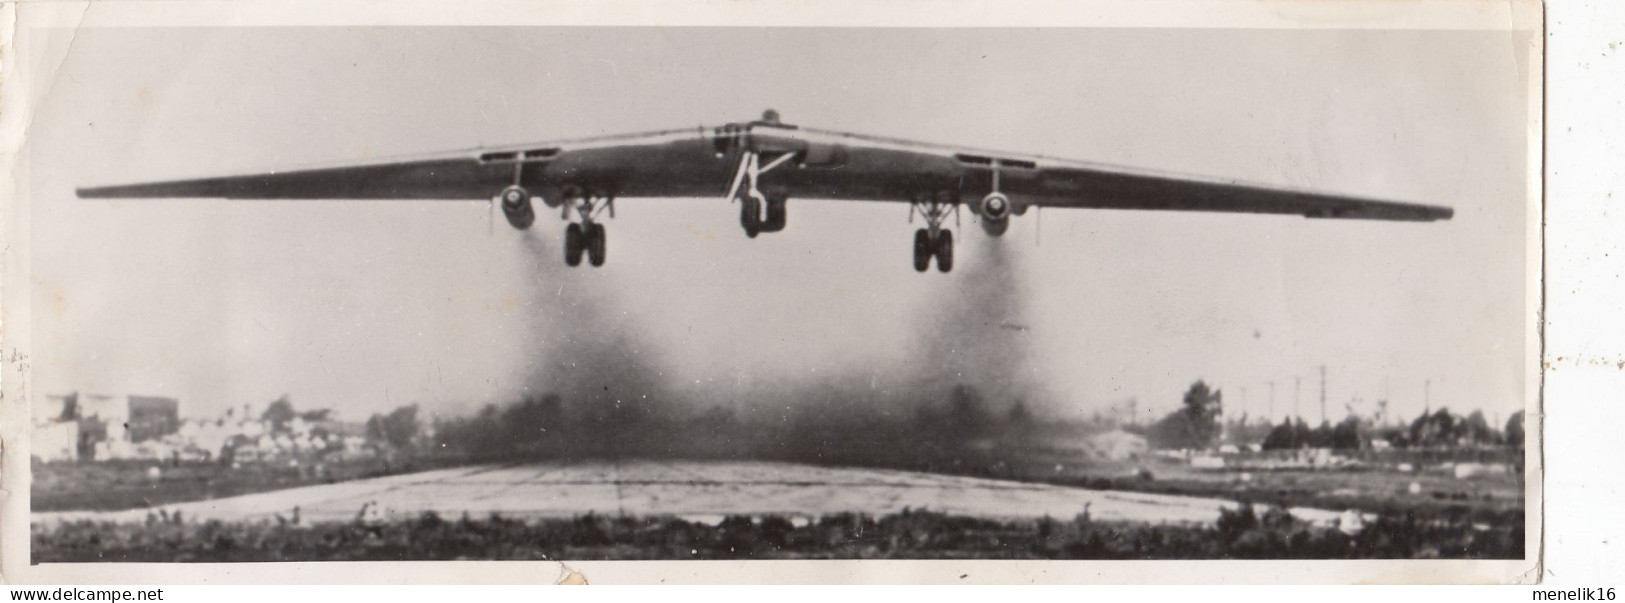 Photo - Northrop YRB-49A - Aile Volante - Associated Press - 05/1950 - Aviación